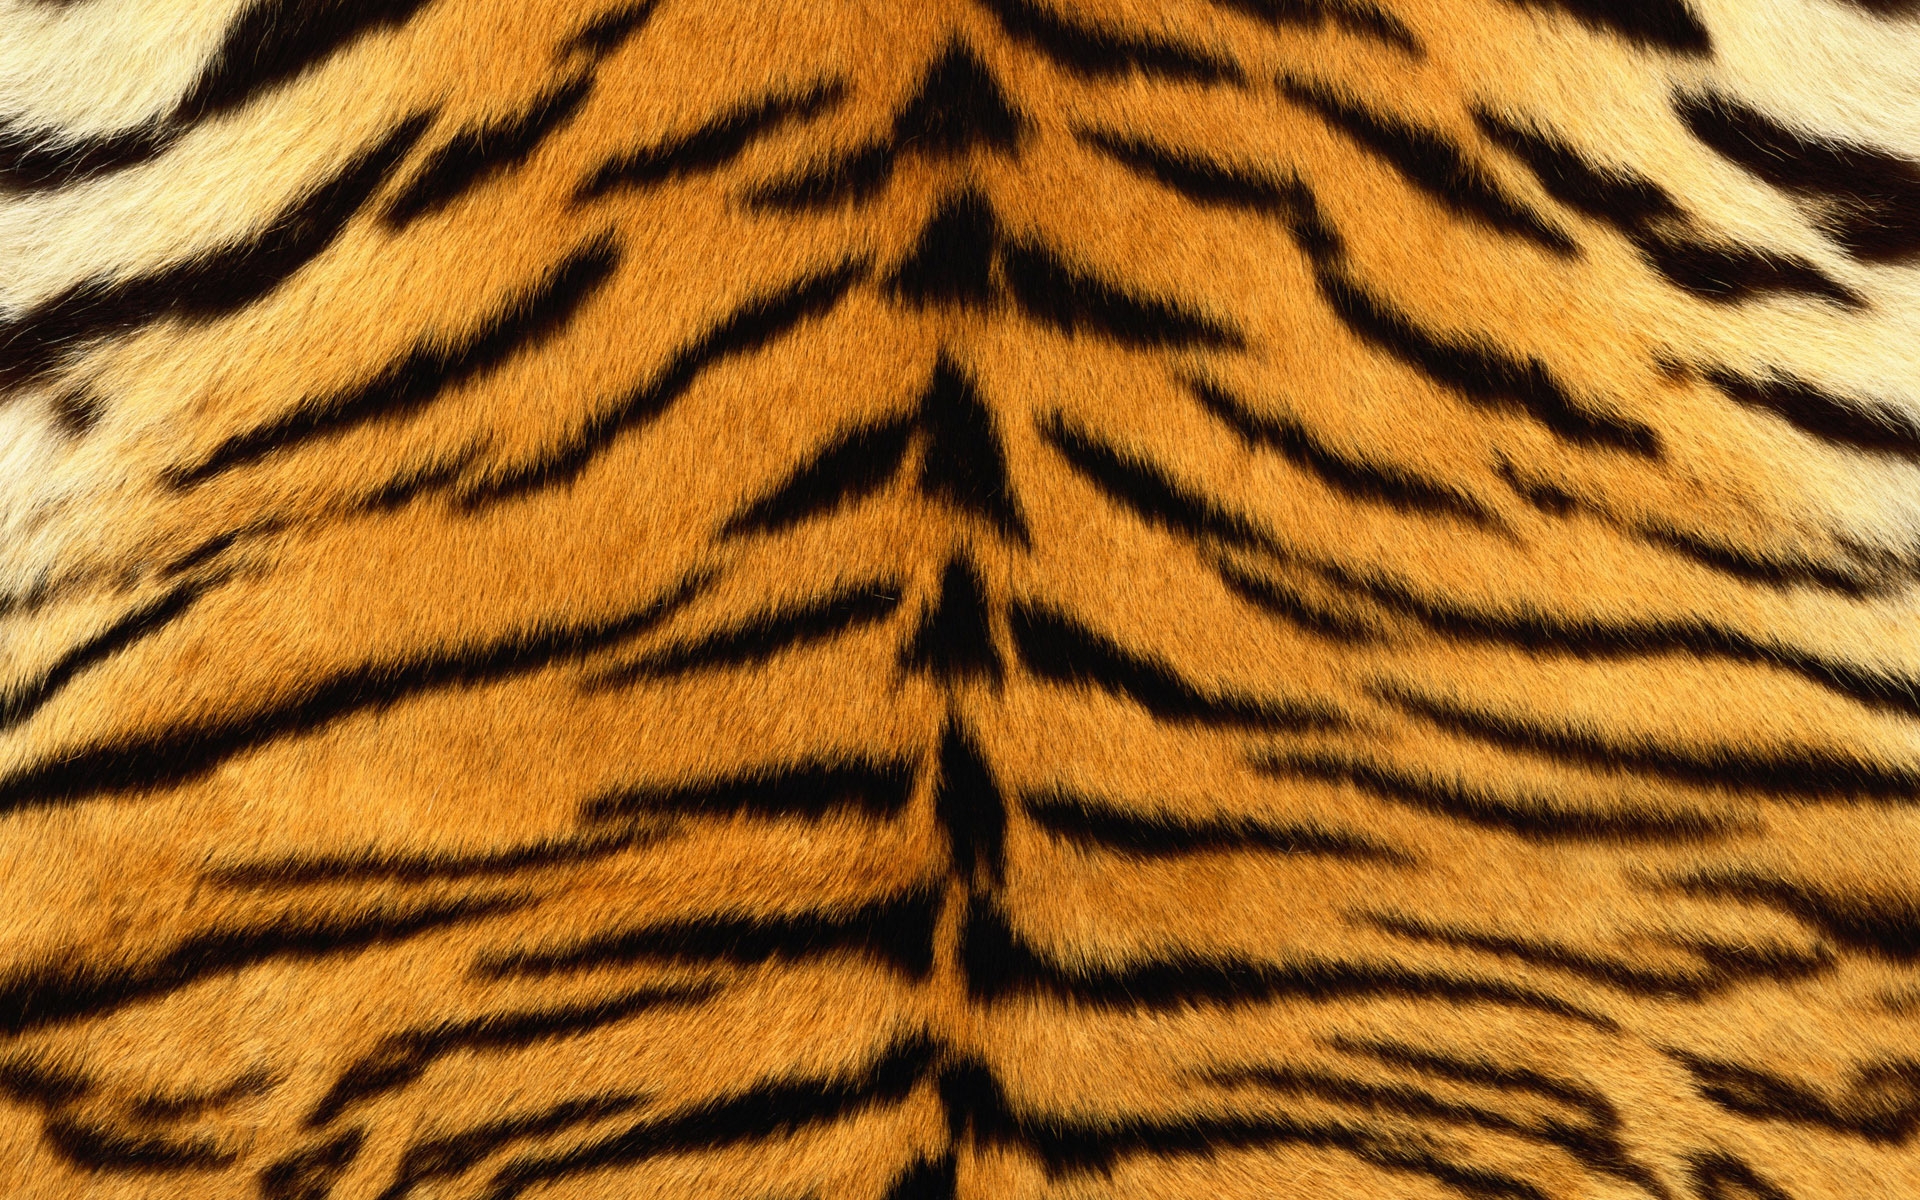 Wallpaper, skin, tiger, stripes, fur, striped 1920x1200